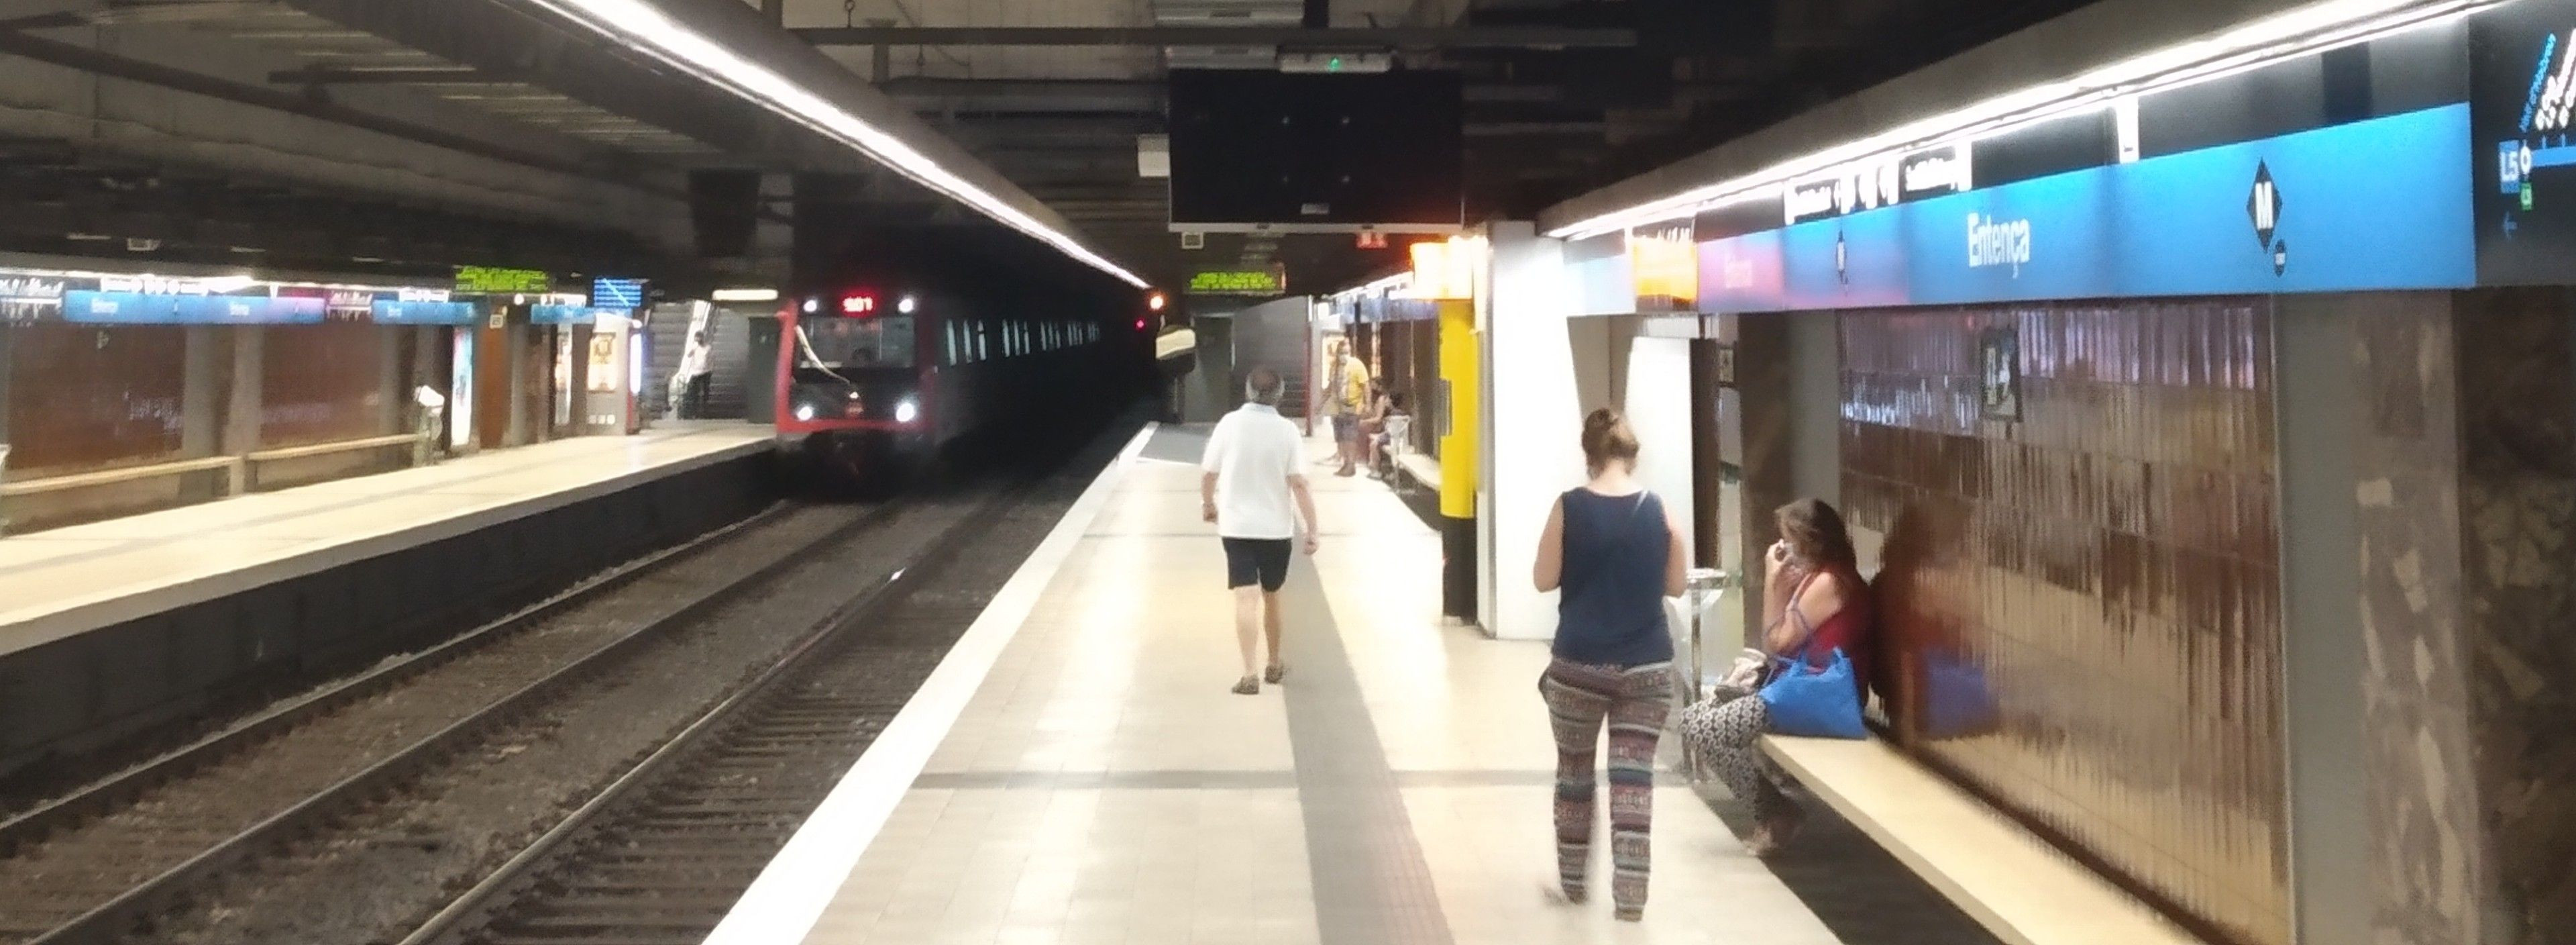 Usuarios del metro en la estación de la L5 de Entença / JORDI SUBIRANA